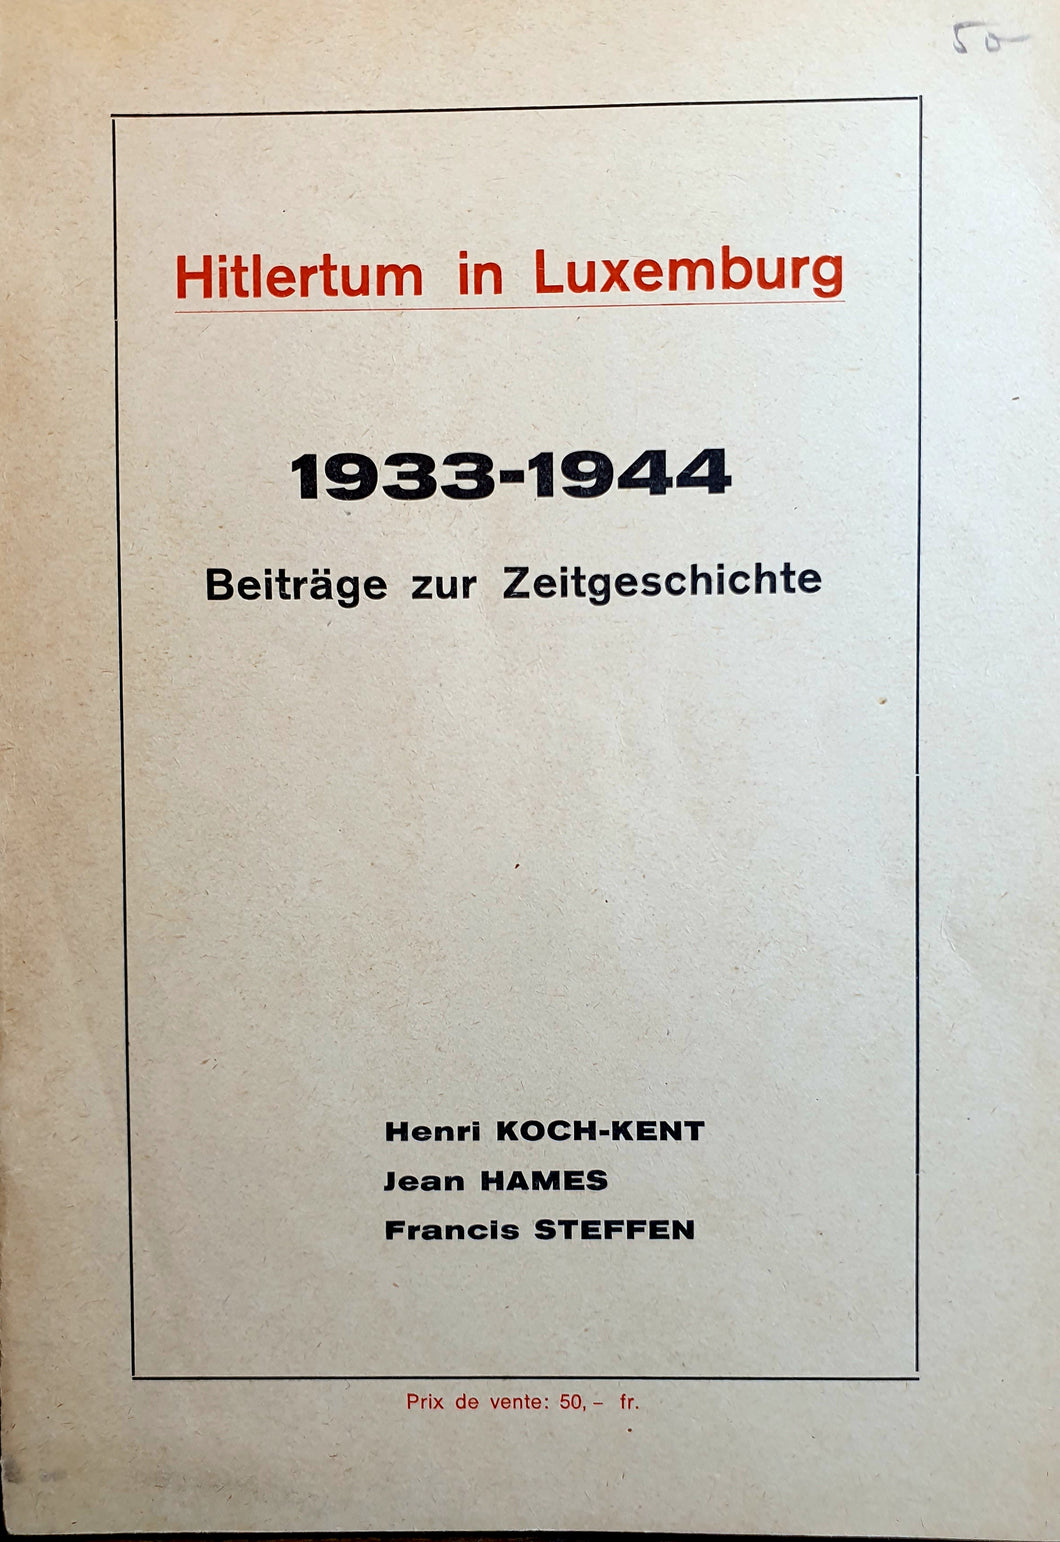 Hitlertum in Luxemburg 1933 - 1944 / Beiträge zur Zeitgeschichte